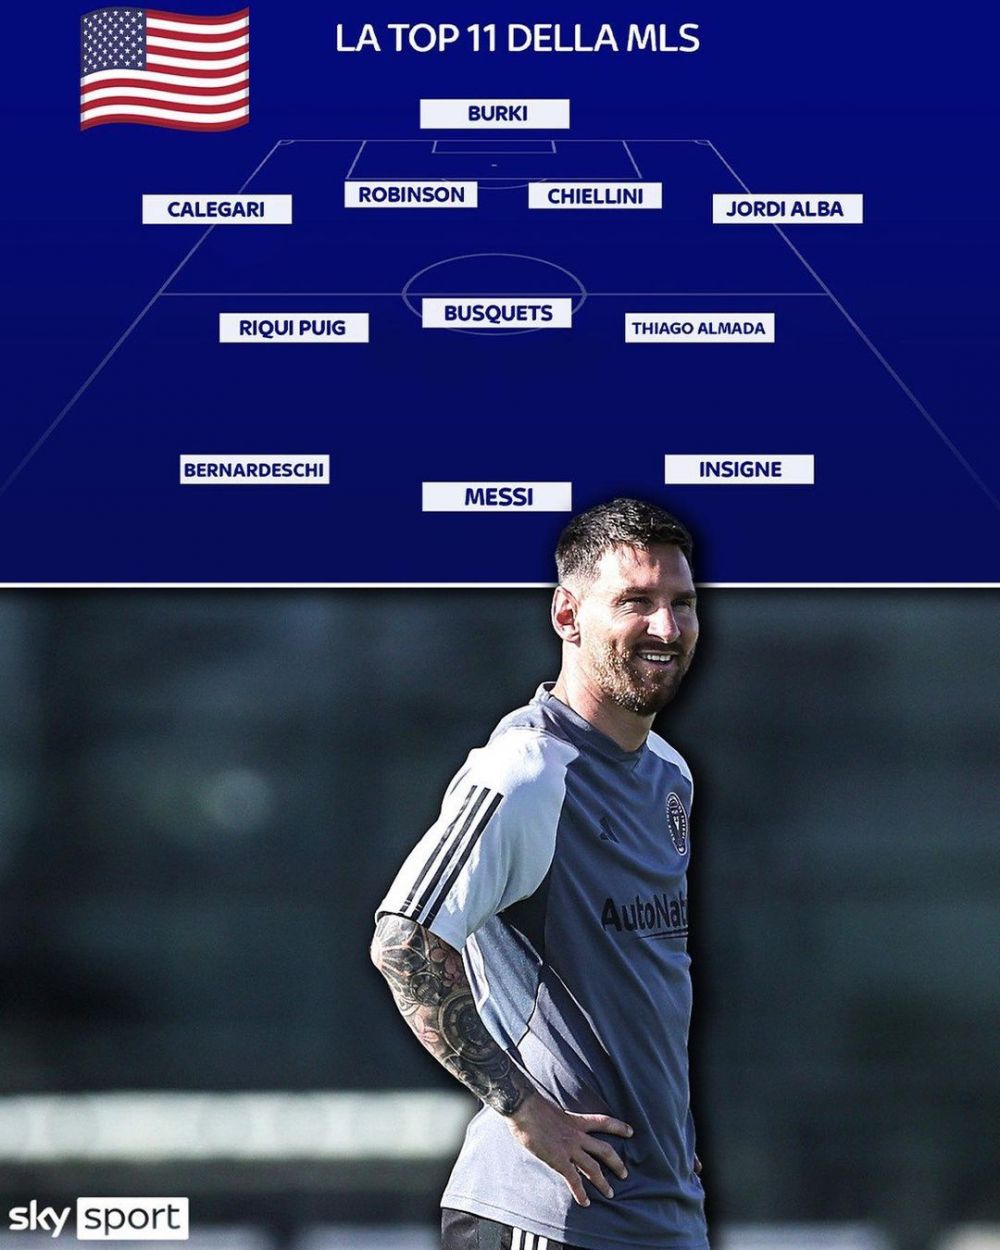 Andrei Burcă apare în 11-le de top al Arabiei Saudite făcut de Sky Sport pentru a compara campionatul lui Cristiano Ronaldo cu MLS_2